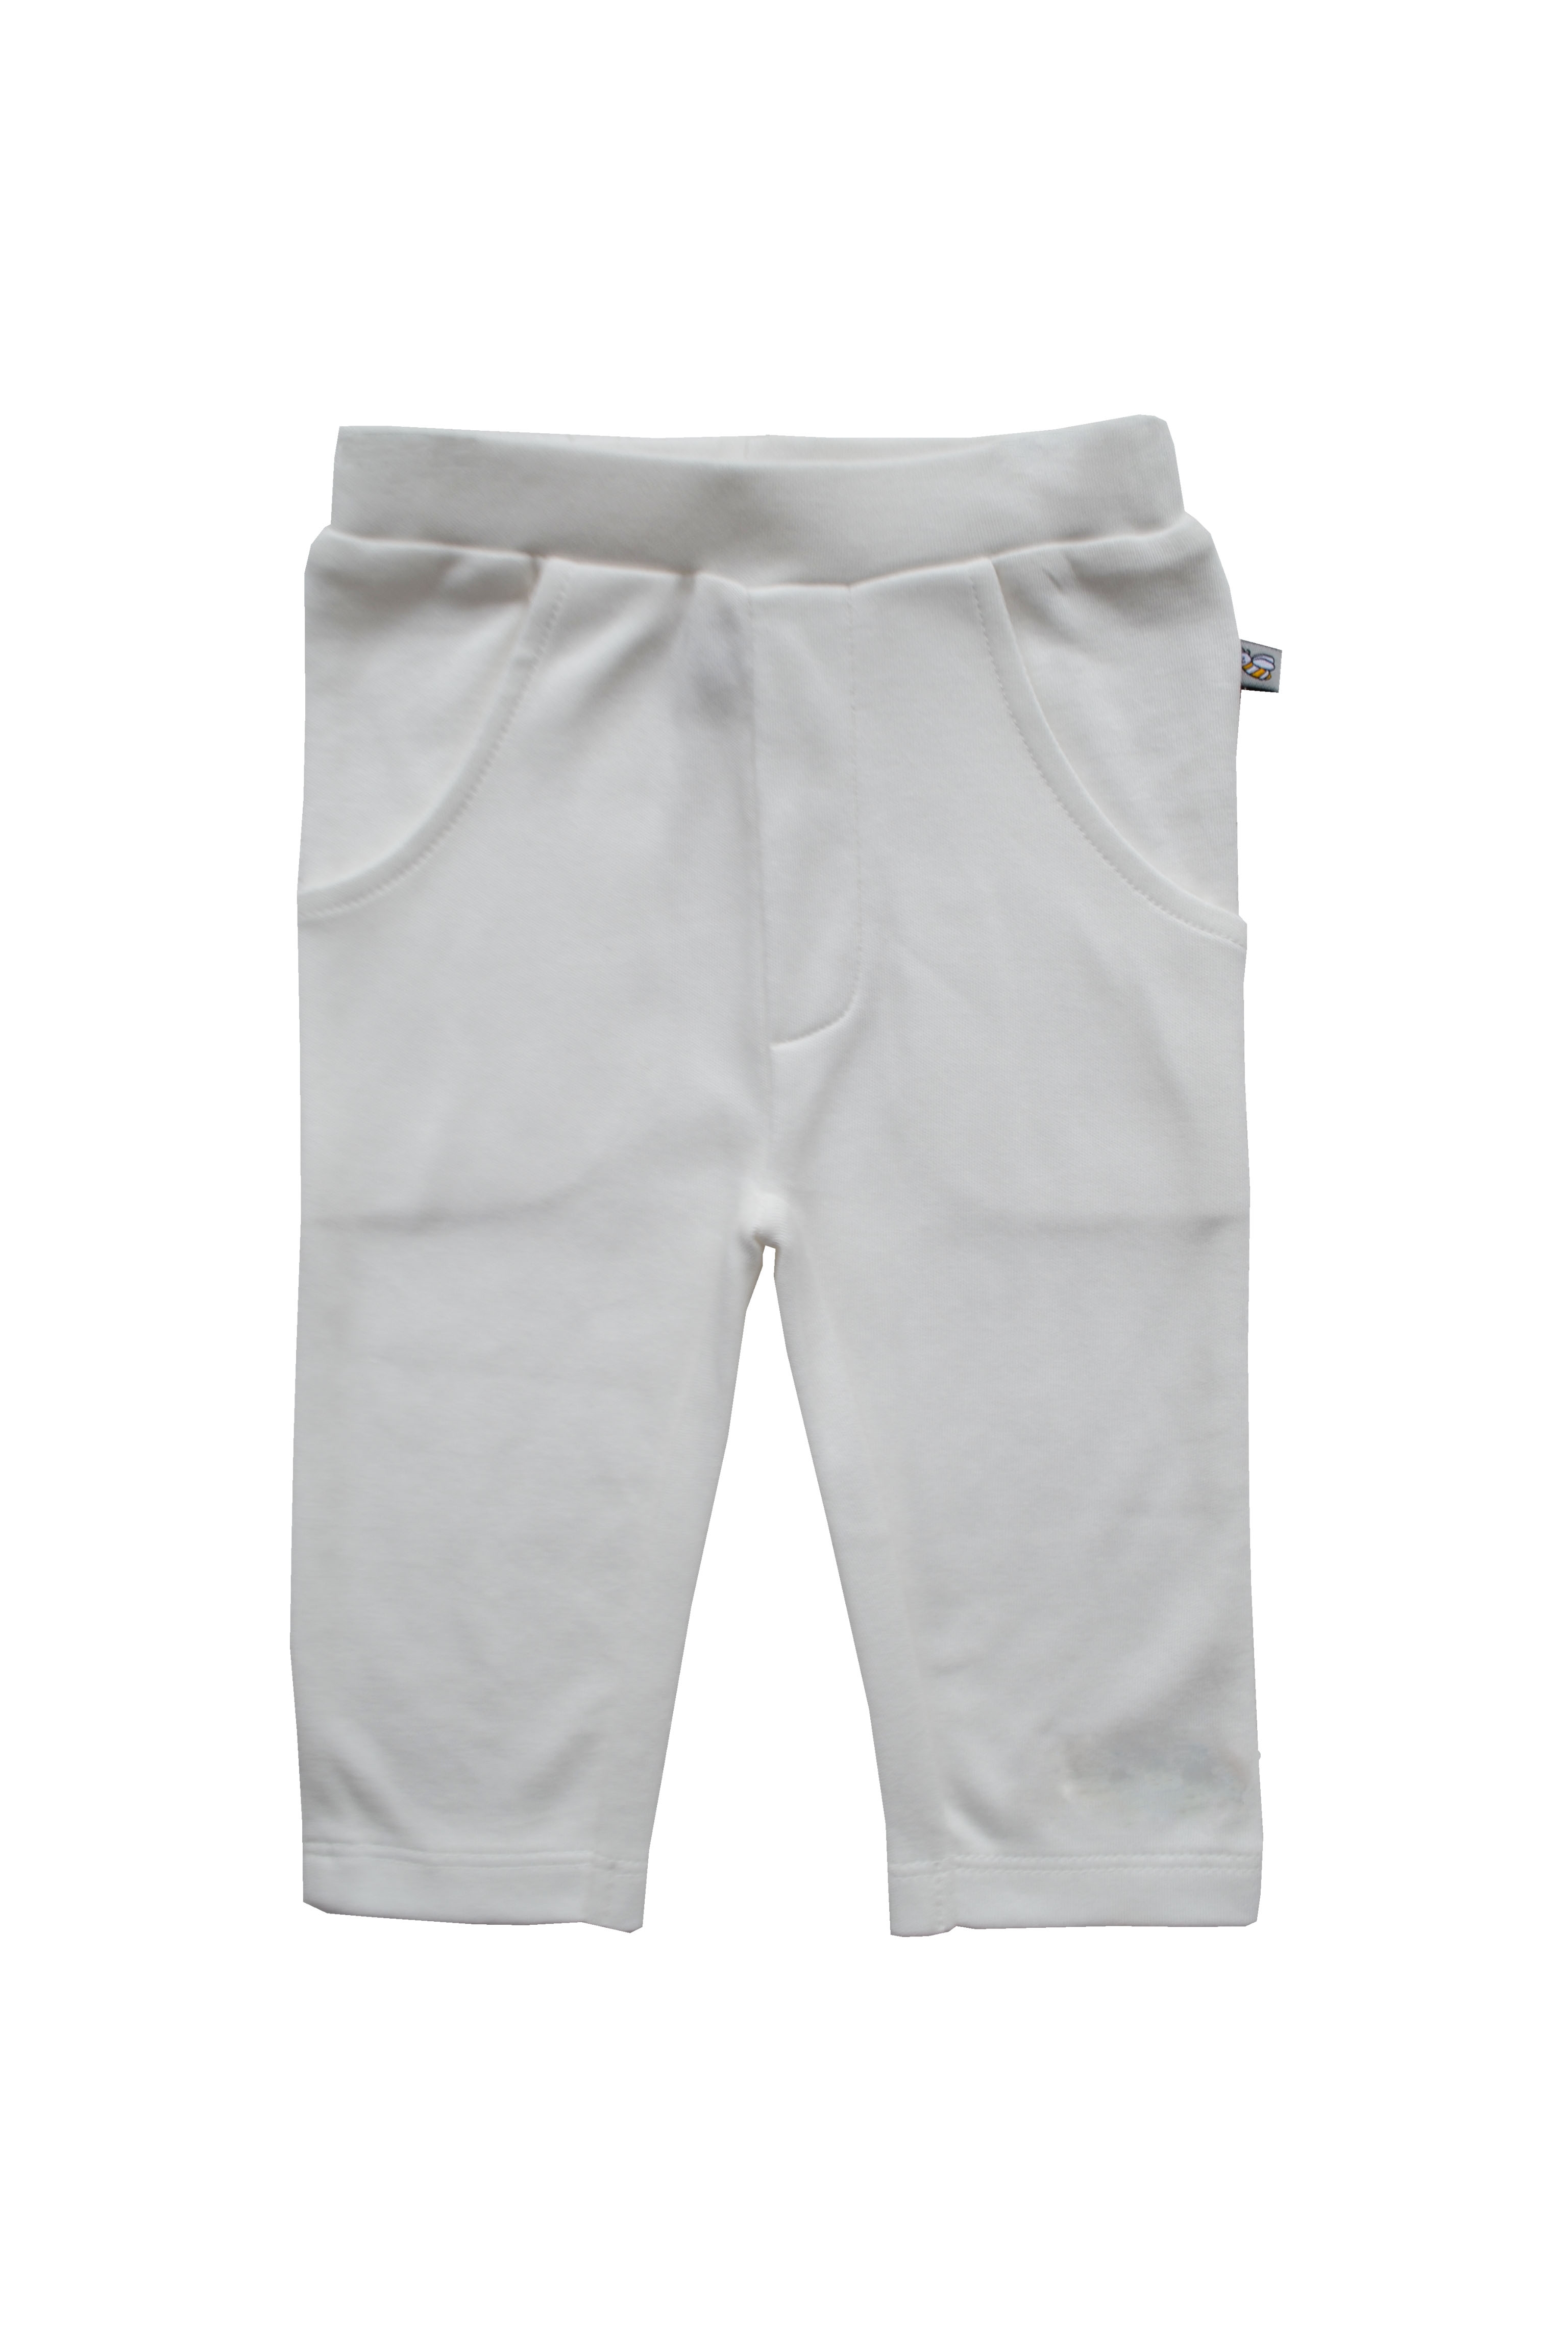 Babeez | Cream Pants (100% Cotton Interlock Biowash) undefined